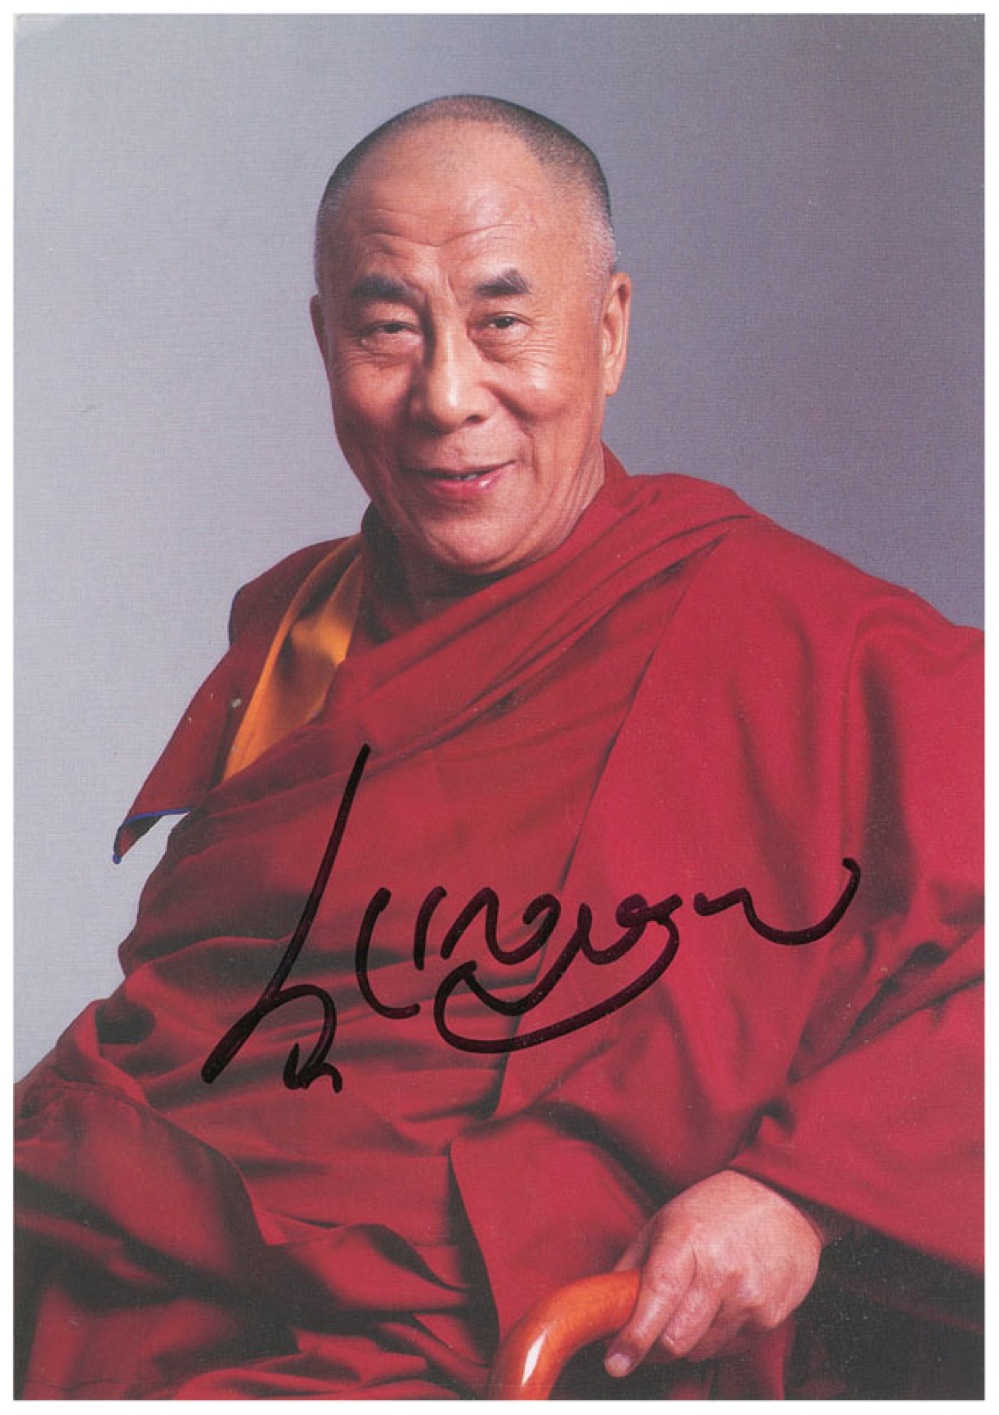 Lot #198 Dalai Lama